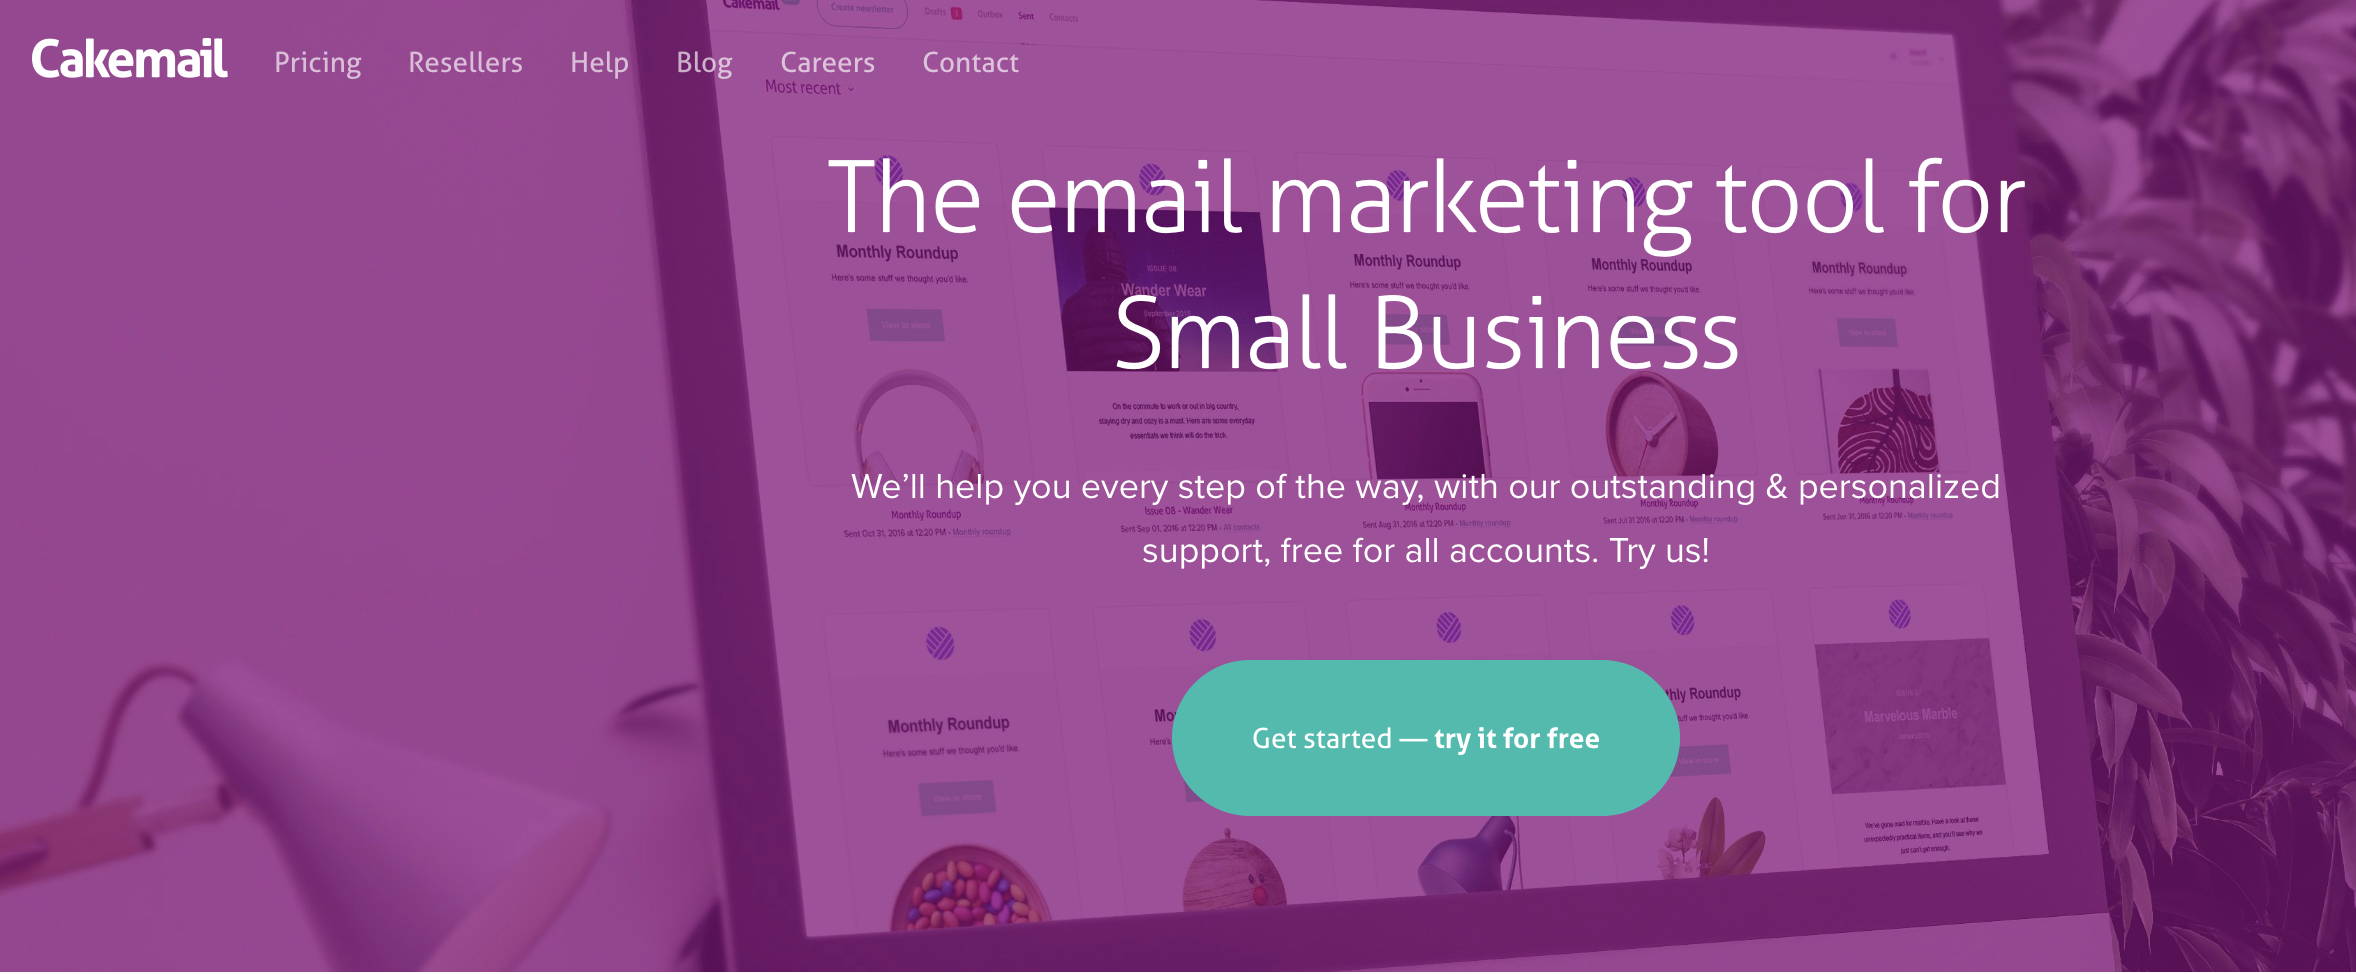 Cake Mail como exemplo de ferramenta grátis de email marketing